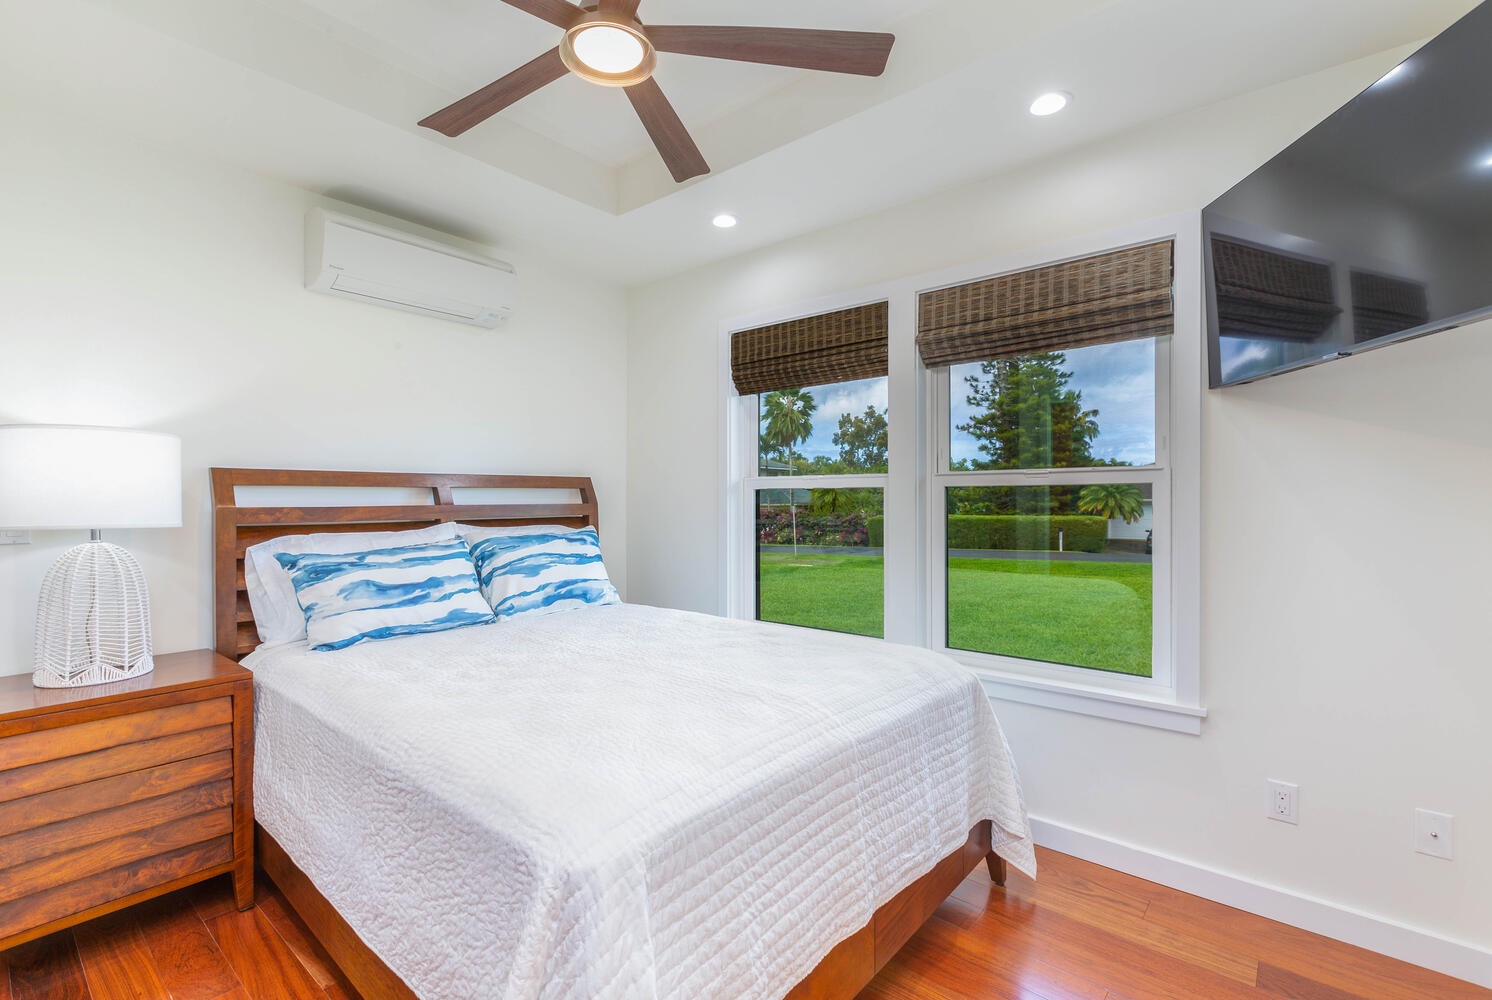 Princeville Vacation Rentals, Aloha Villa - Guest bedroom also has views